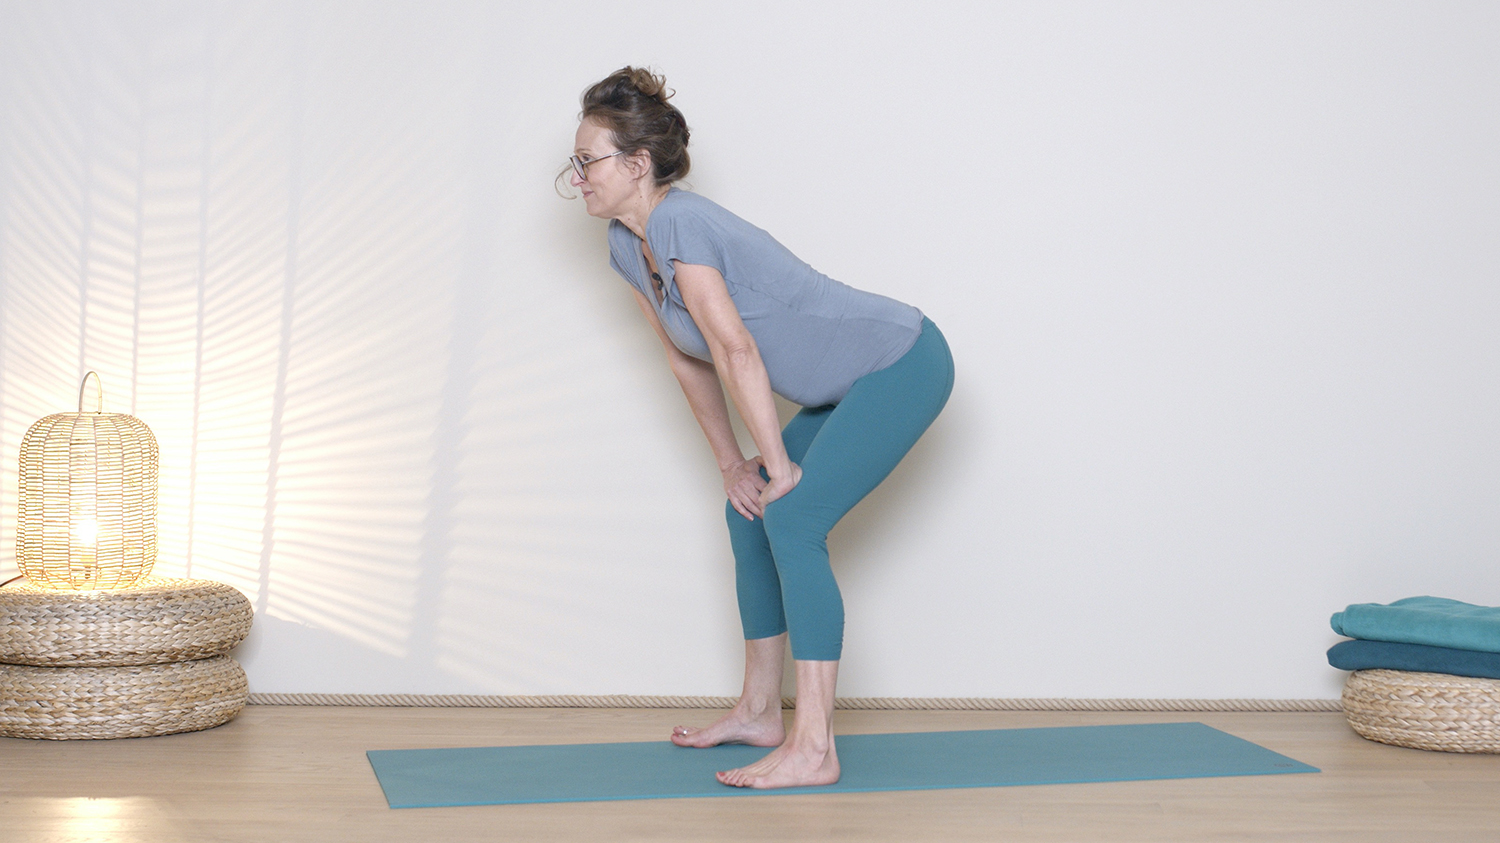 Élément Feu - Dynamique - 5 min | Cours de yoga en ligne avec Delphine Denis | Ayurveda, Hatha Yoga dynamique